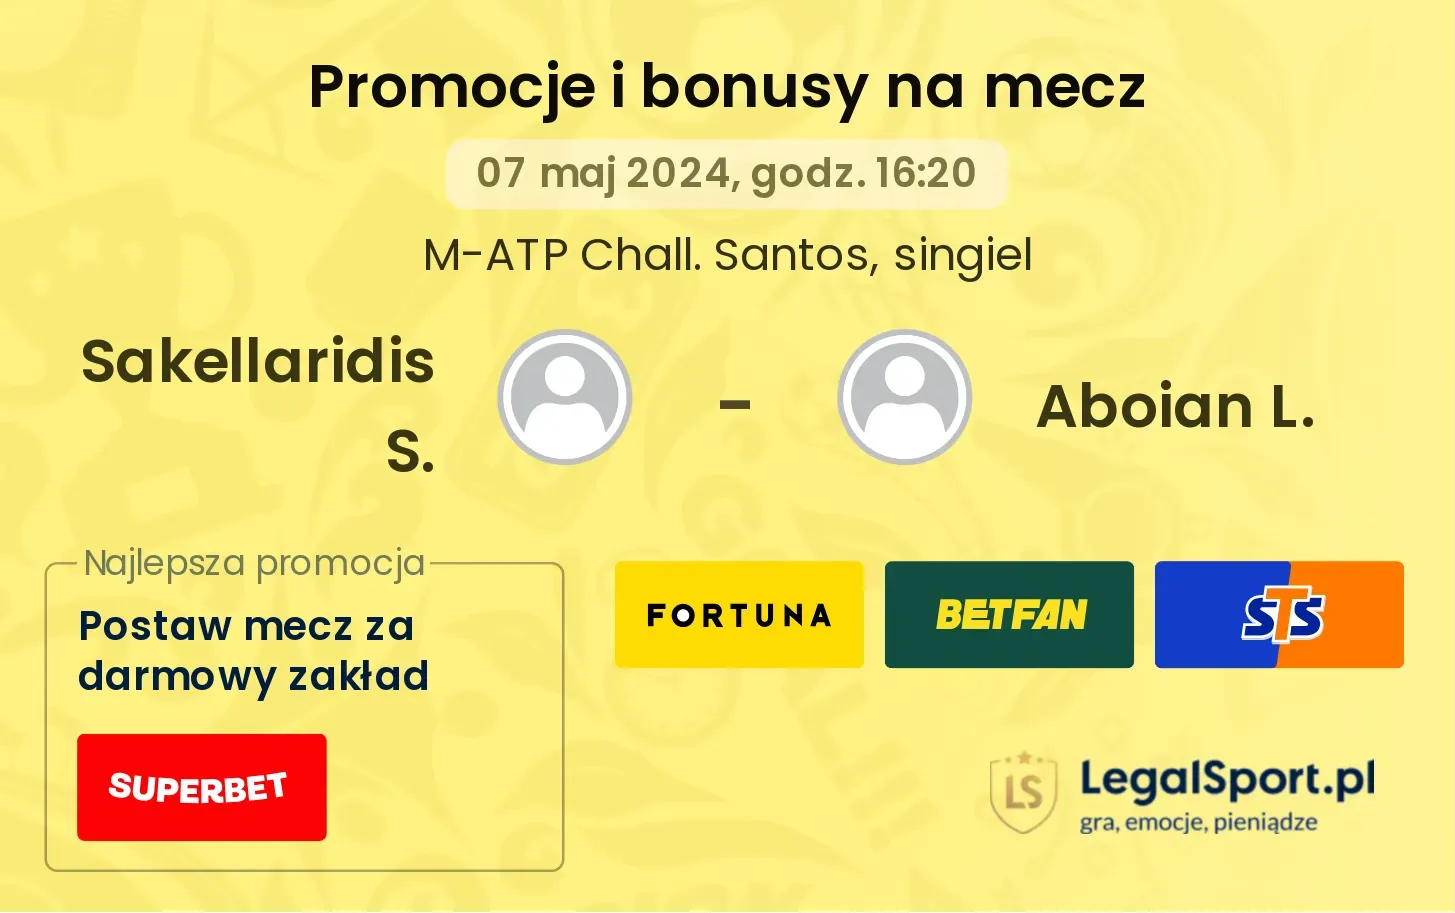 Sakellaridis S. - Aboian L. promocje bonusy na mecz